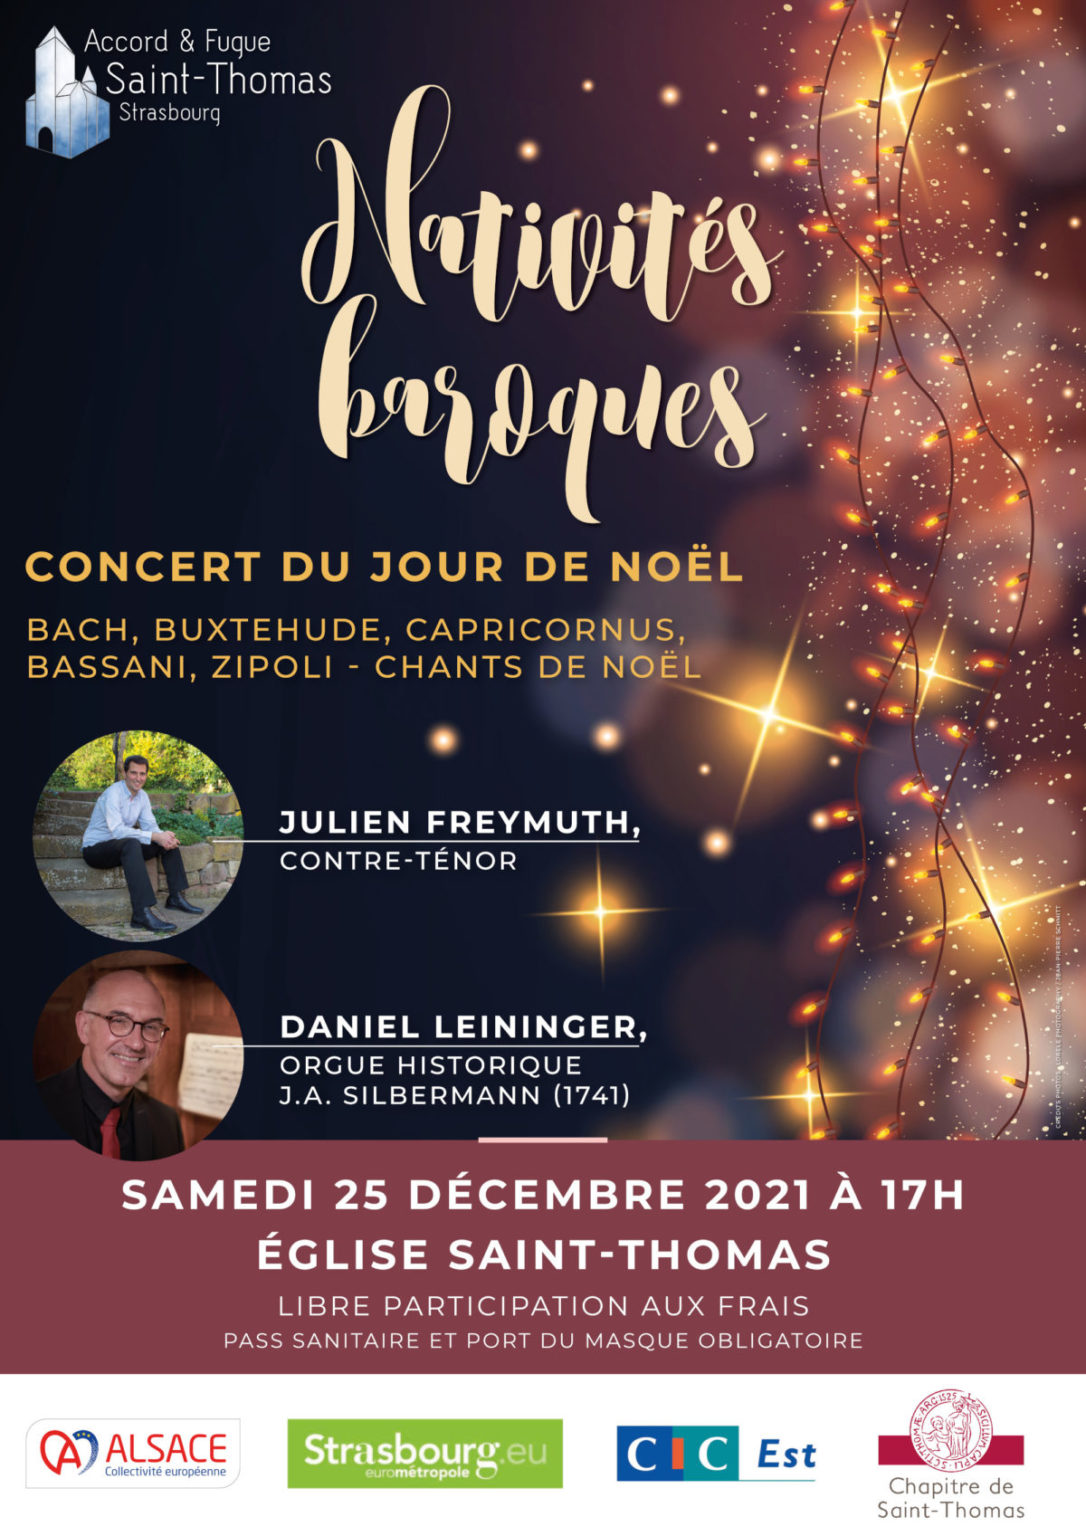 Concert du Jour de Noël Saint-Thomas